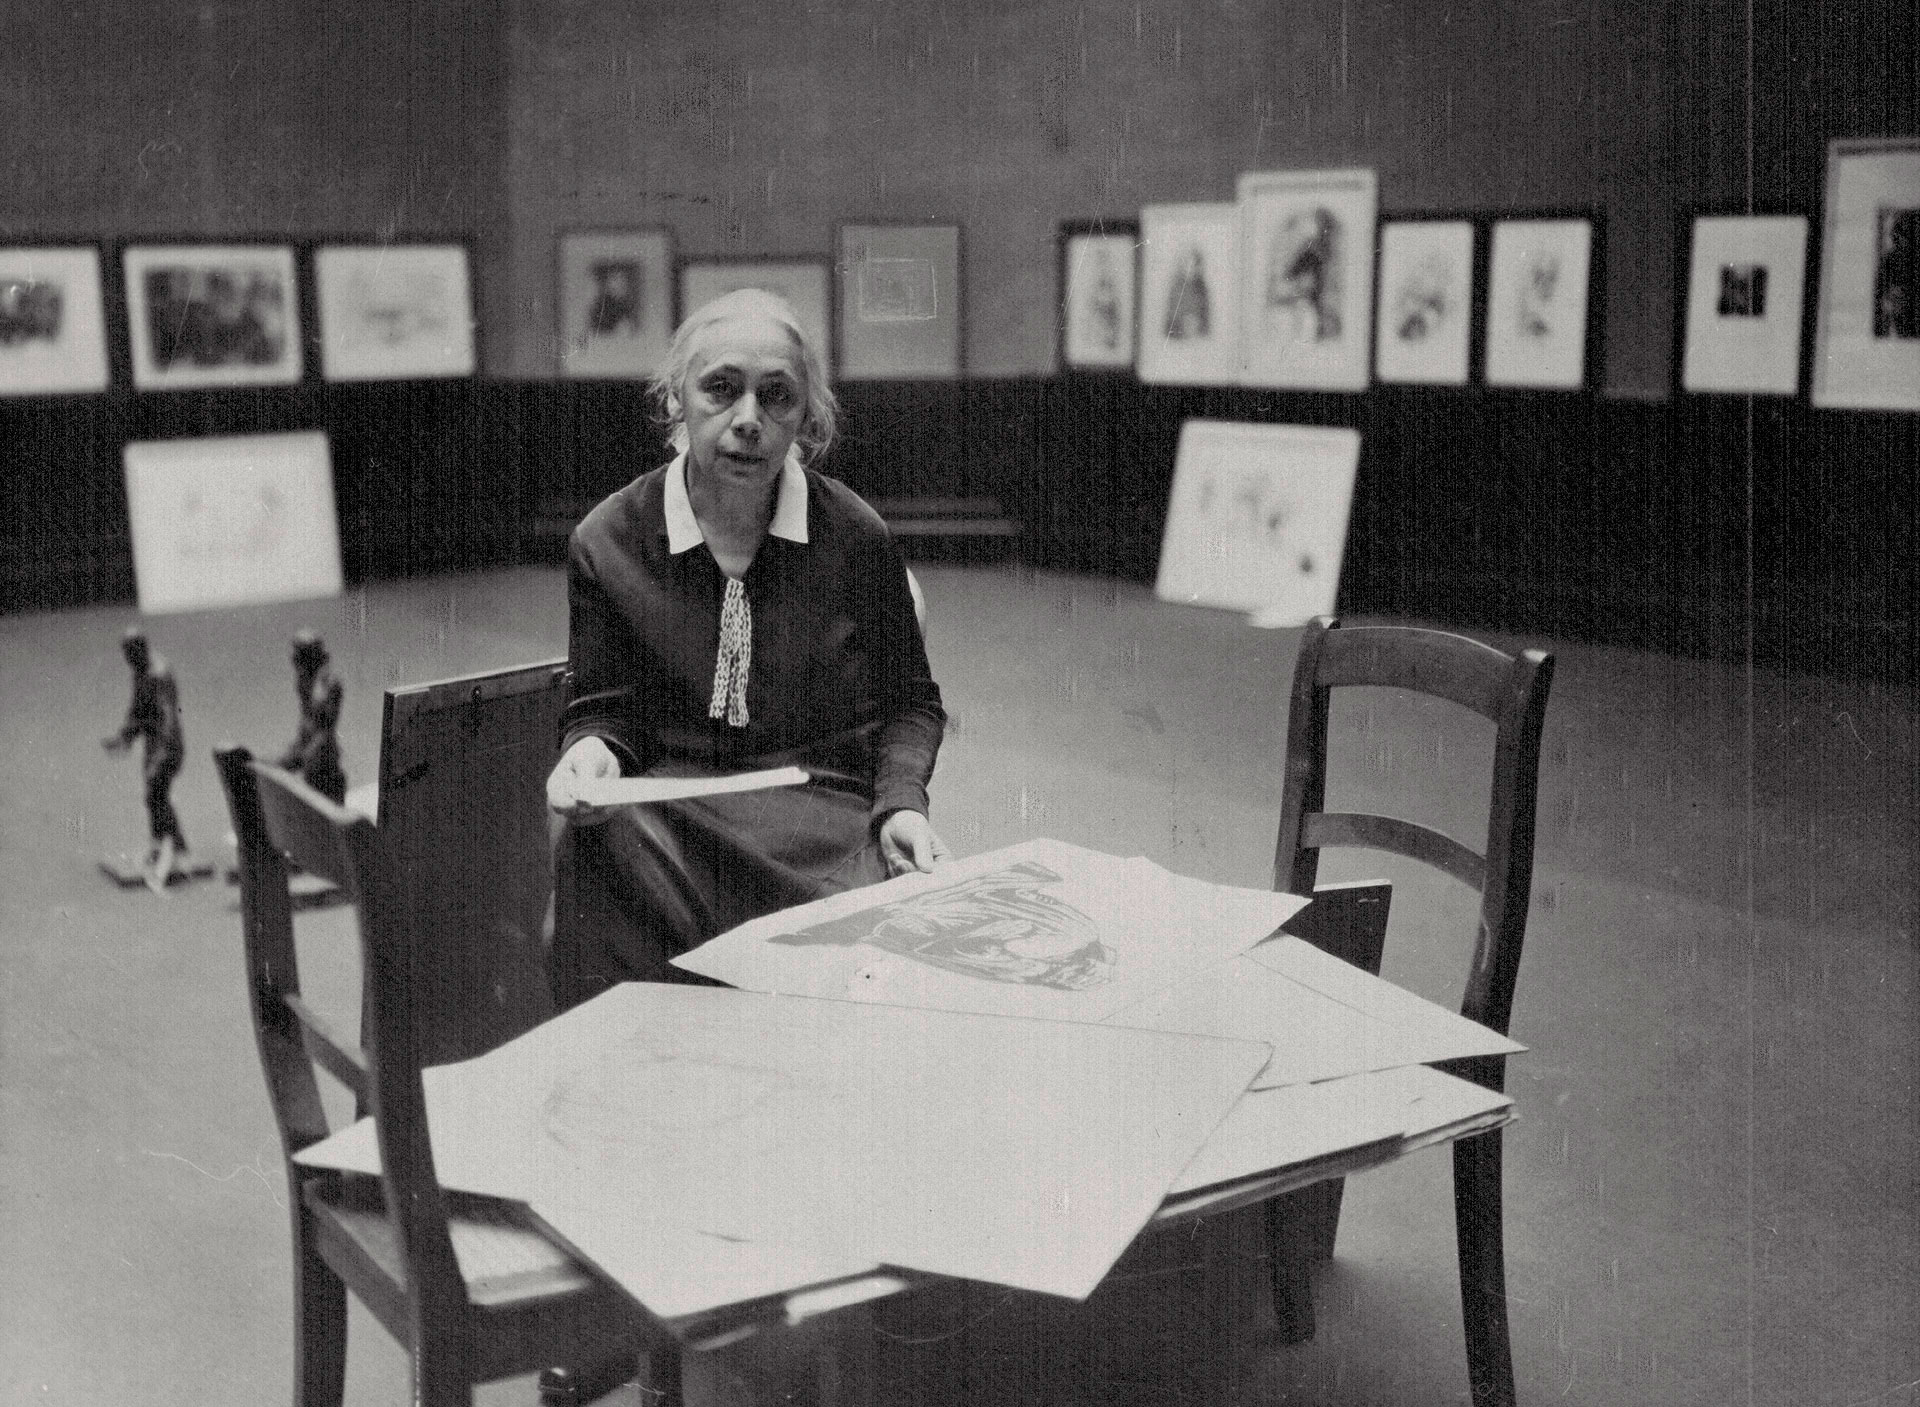 Käthe Kollwitz, 1927, selecting works for her exhibition at the Prussian Academy of Art, photographer unknown, Kollwitz estate © Käthe Kollwitz Museum Köln